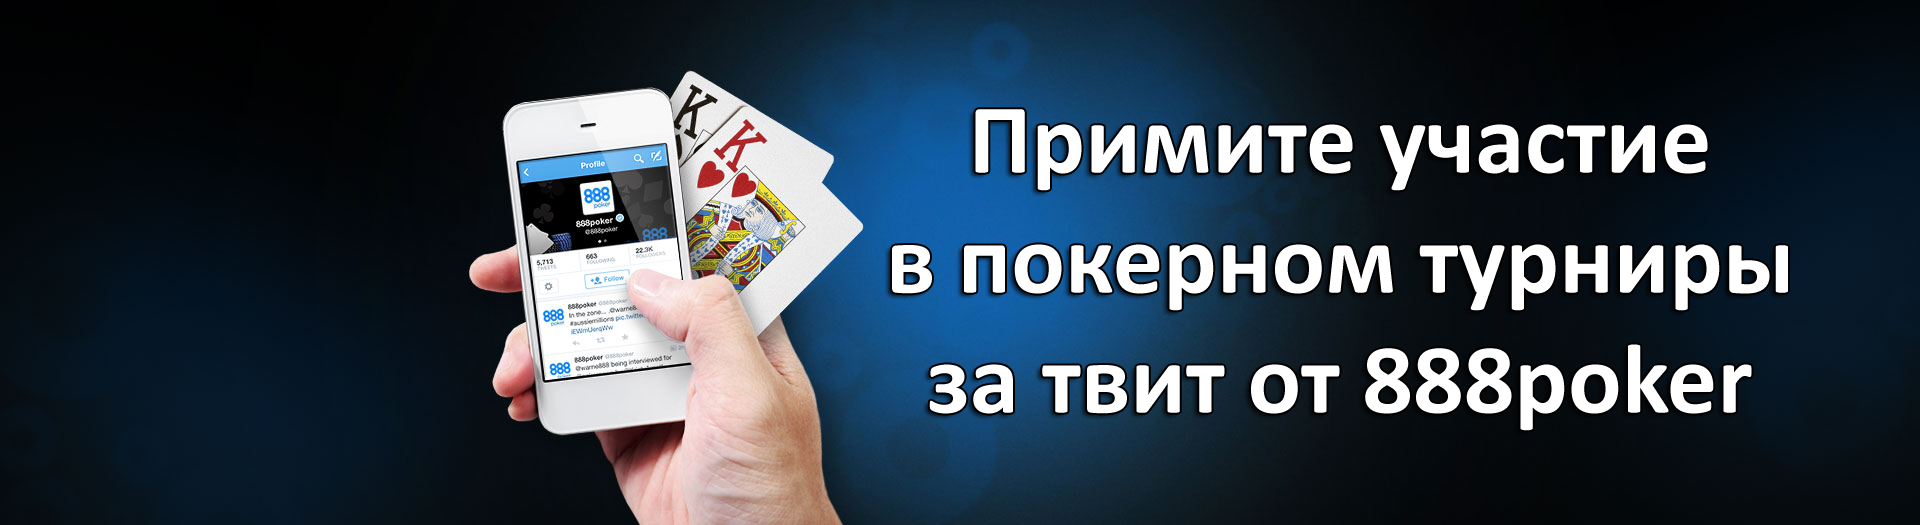 Примите участие в покерном турниры за твит от 888poker